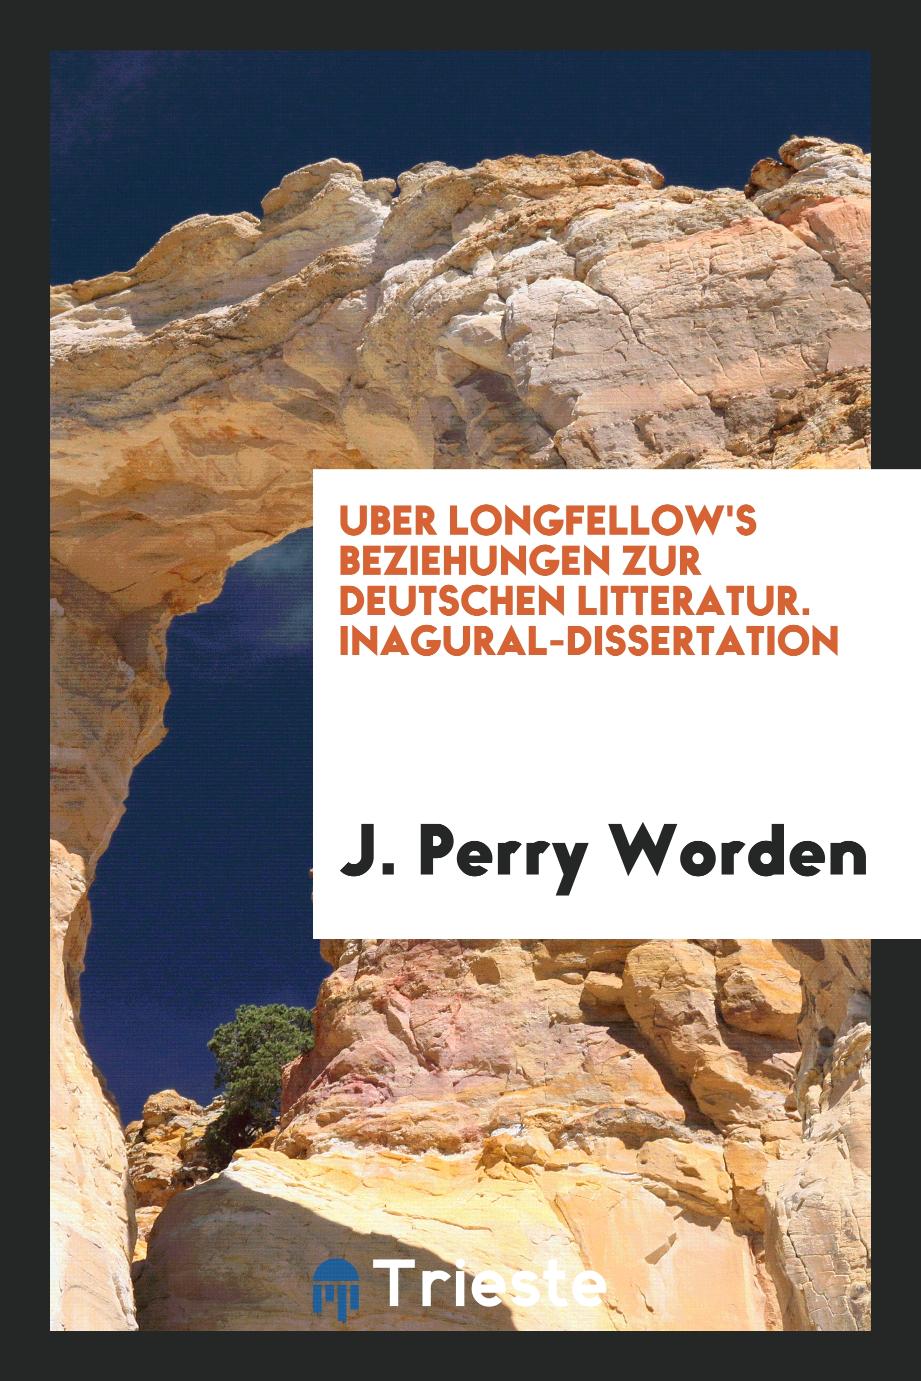 Uber Longfellow's Beziehungen zur deutschen Litteratur. Inagural-dissertation